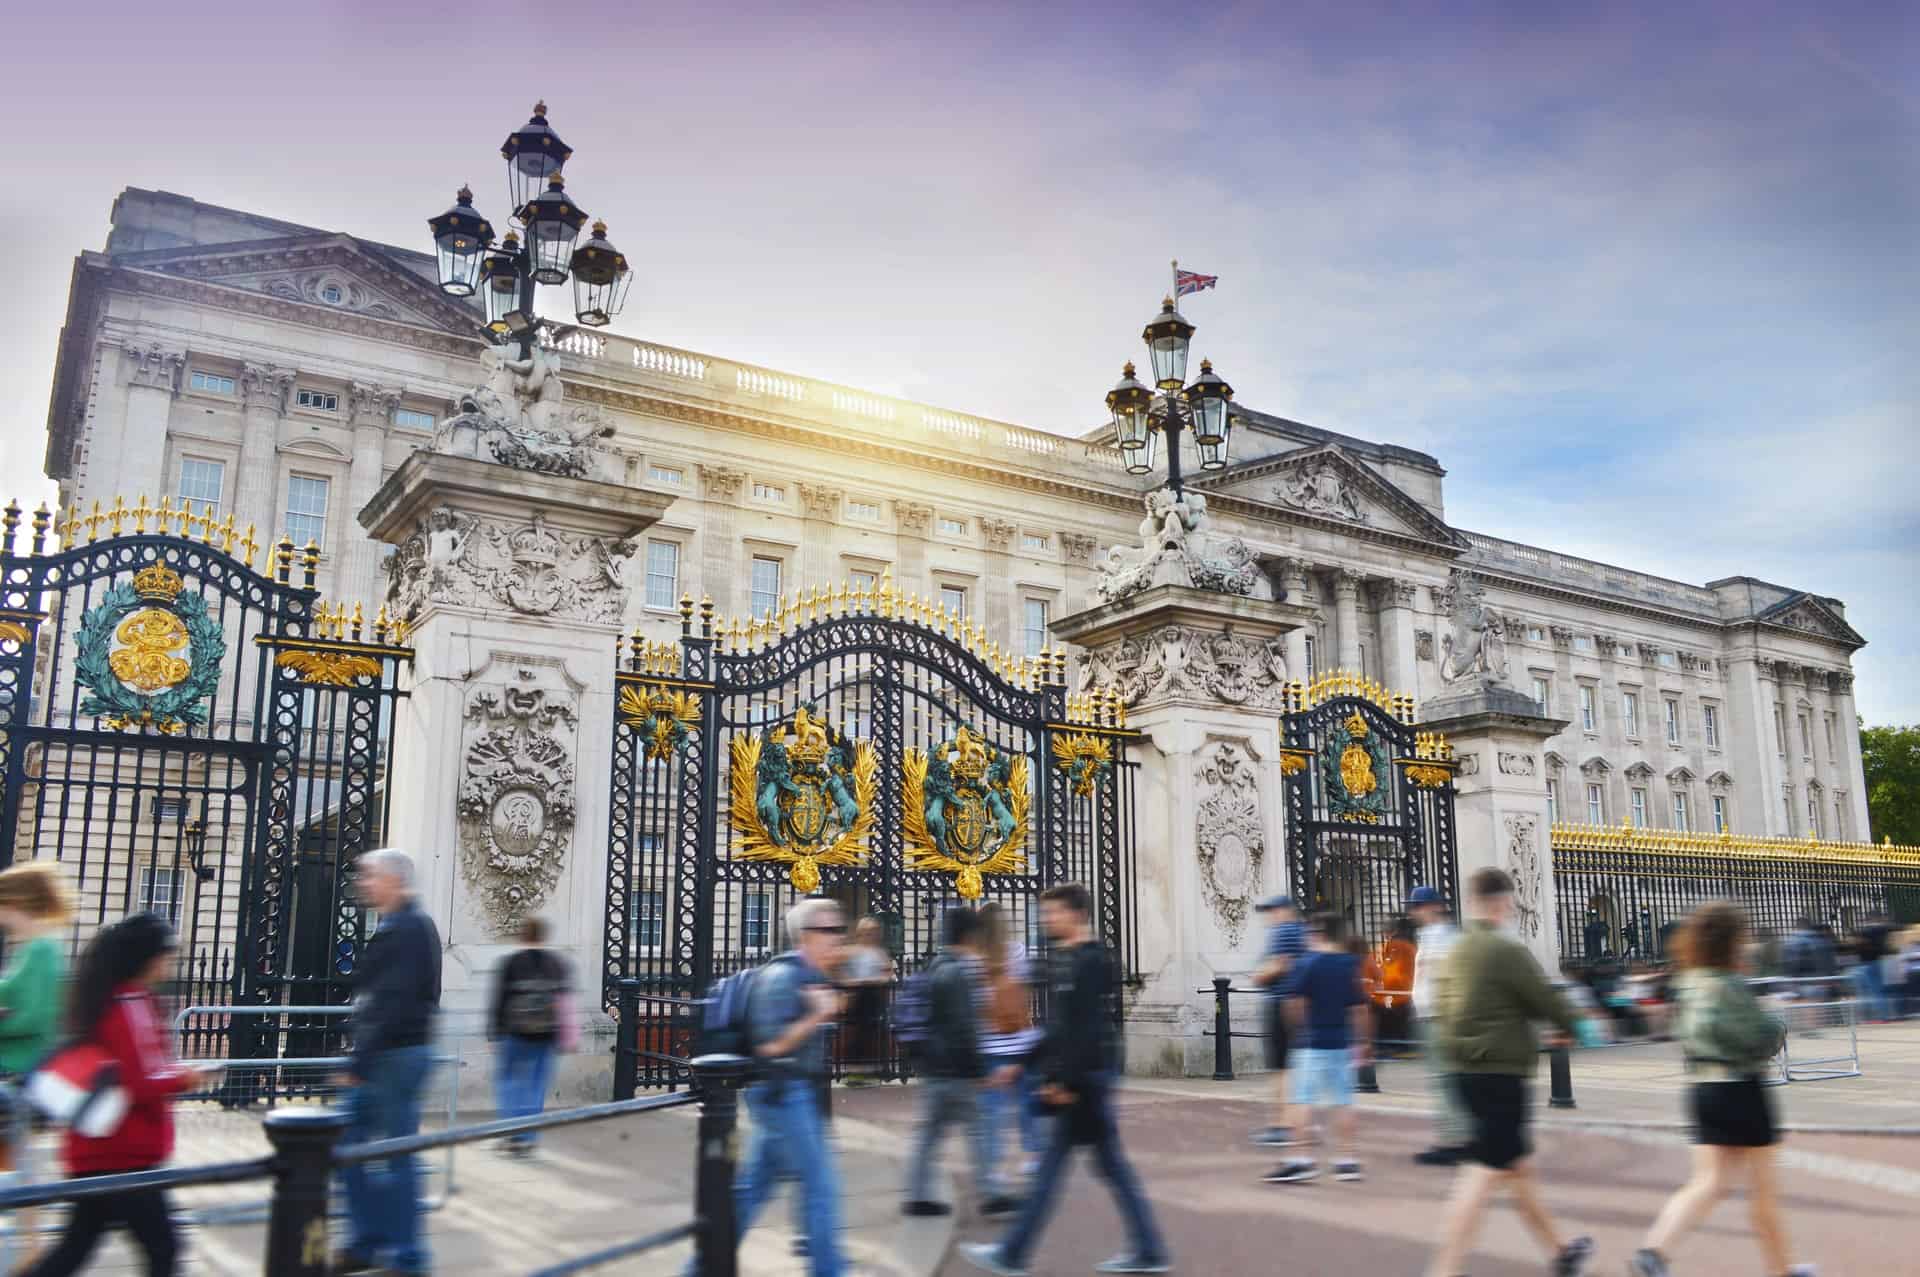 Best things to do in London UK - Josh Symons - Buckingham Palace by Debbie Fan on Unsplash